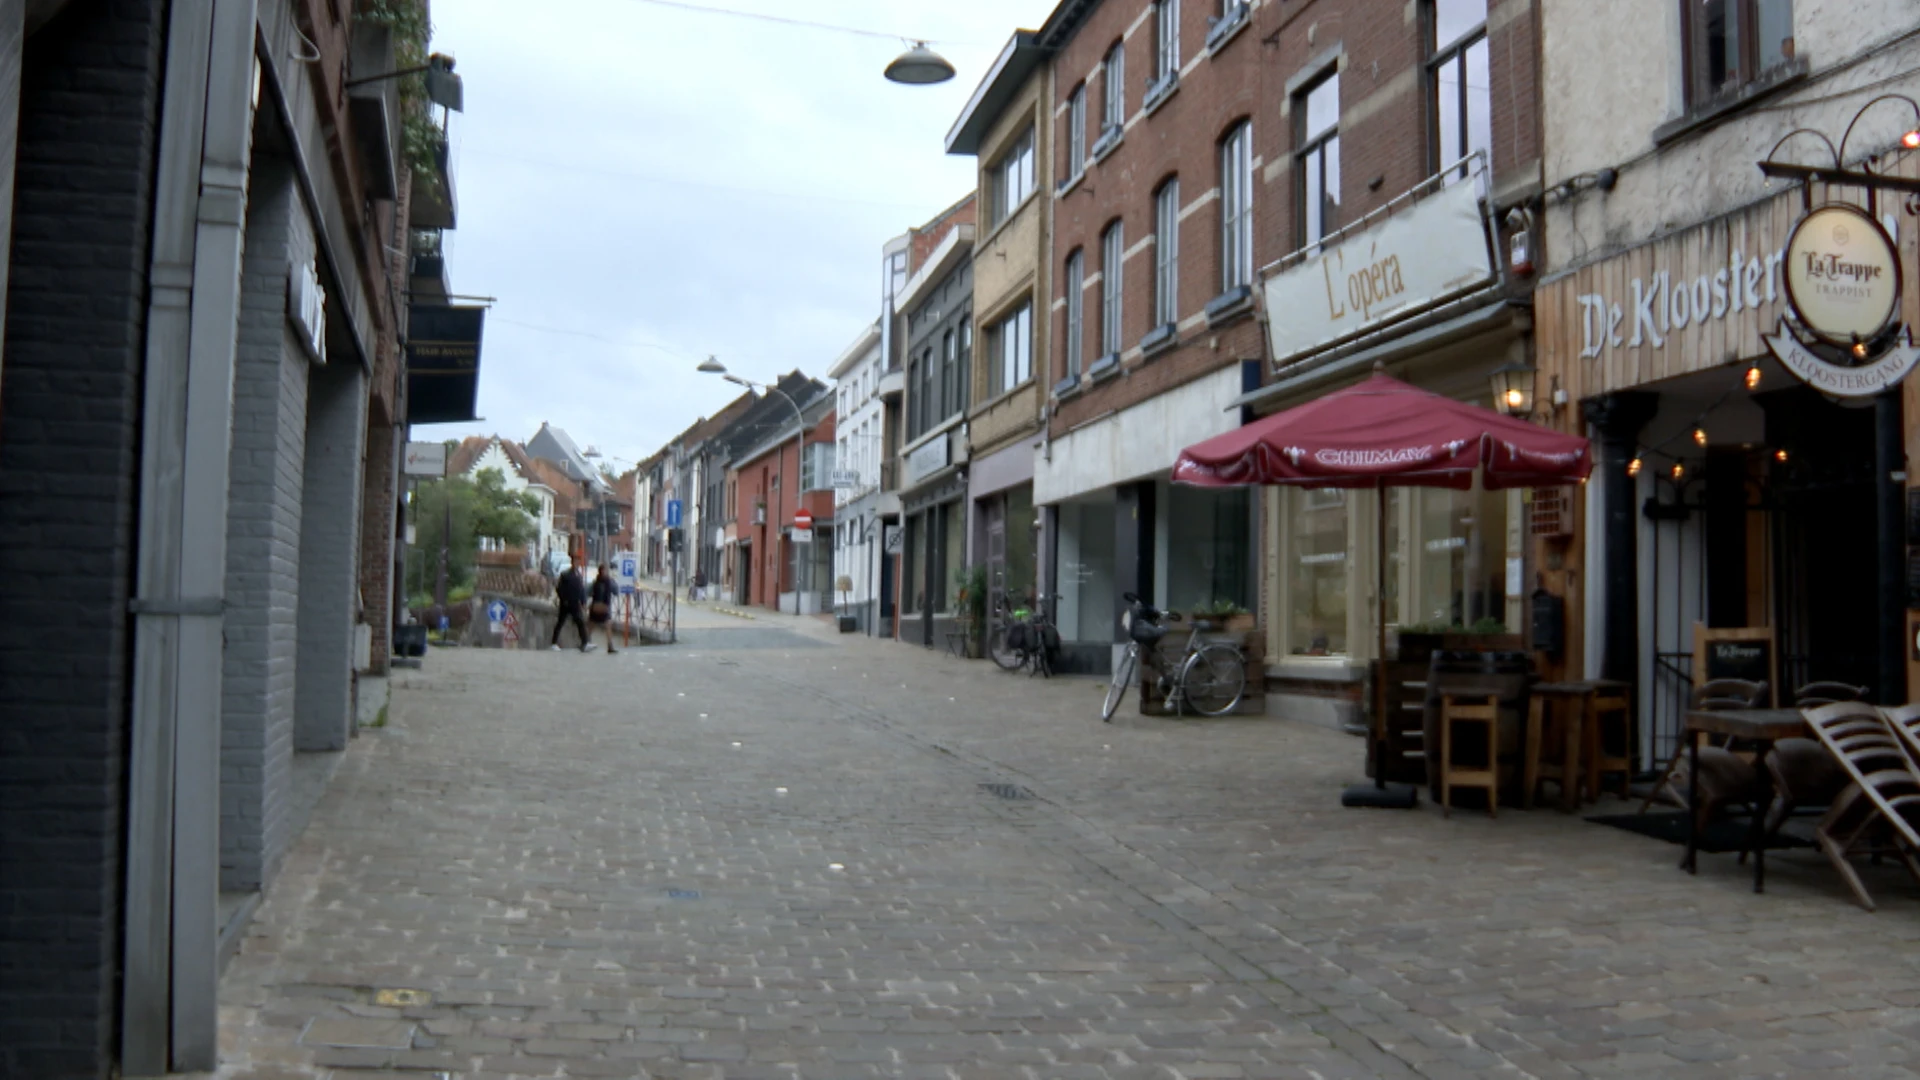 Café De Kloostergang in Aarschot zoekt overnemer: "We zoeken iemand die met goesting ons verhaal wil verderzetten"